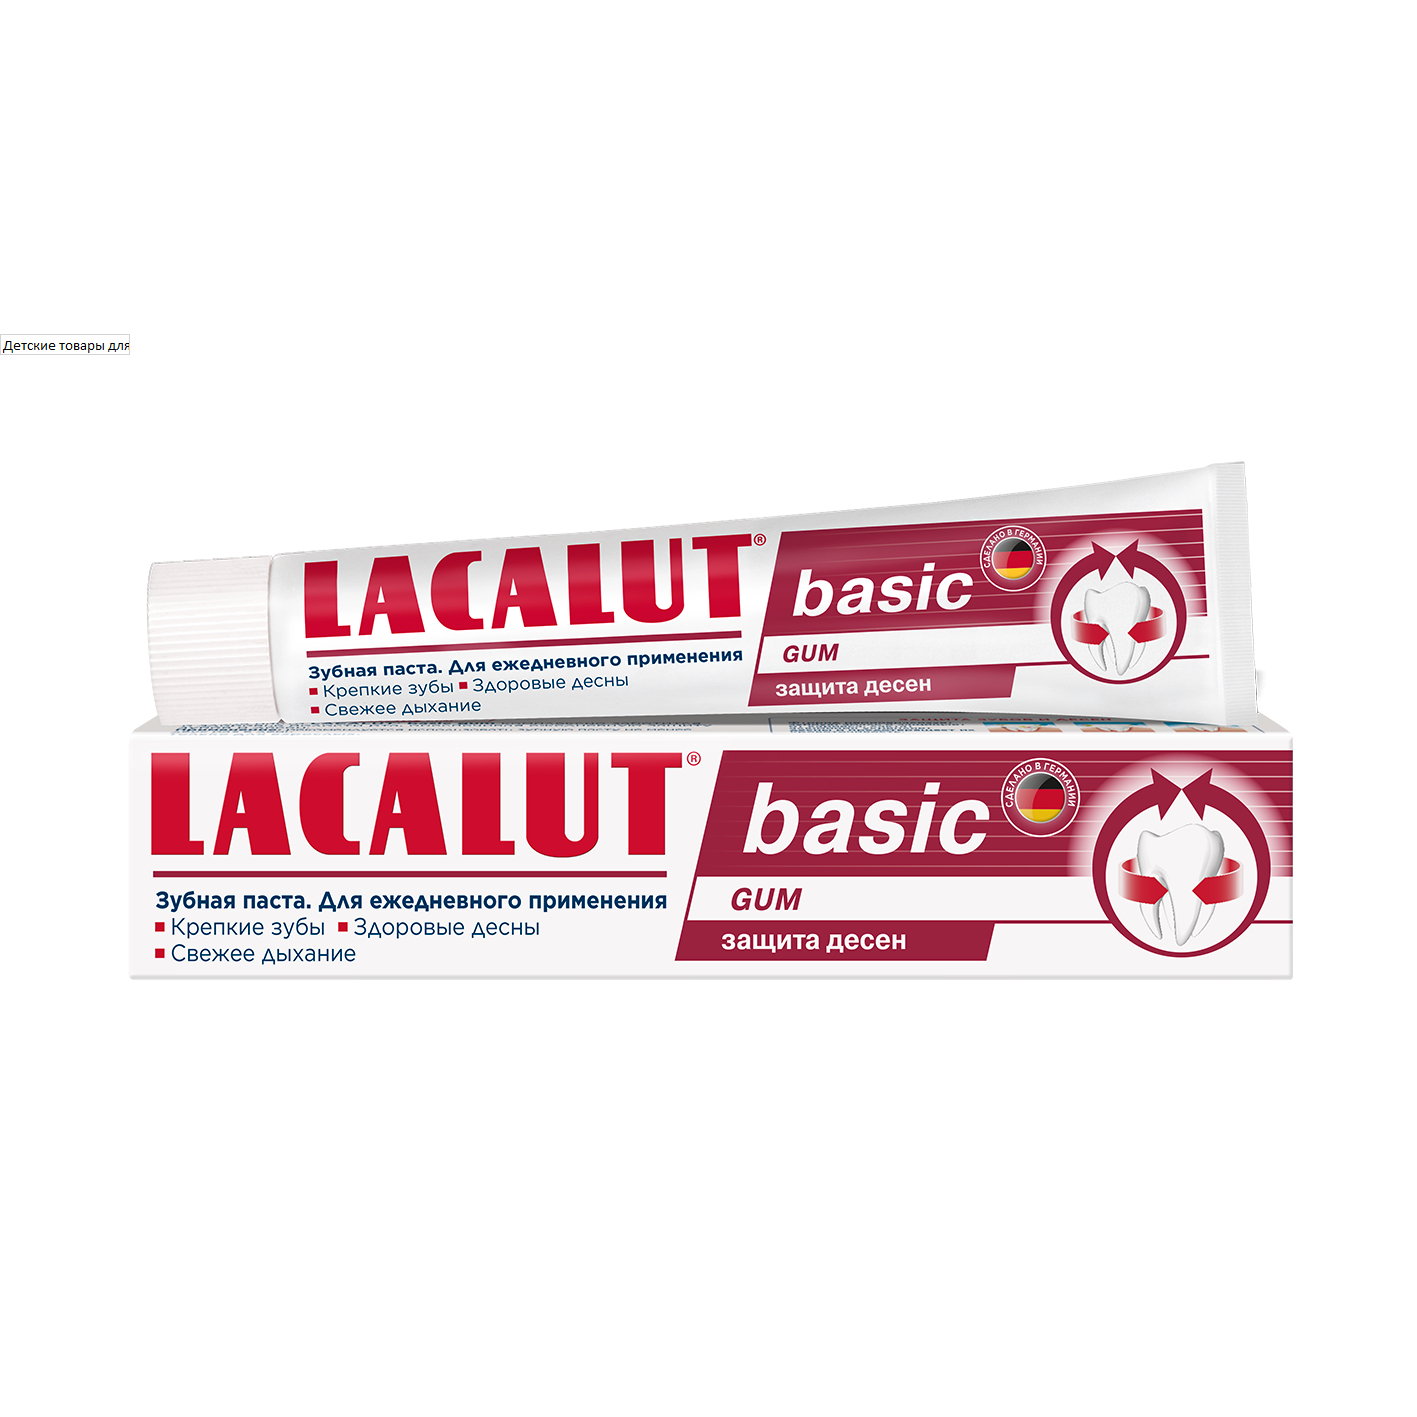 зубная паста lacalut basic gum 75 мл Зубная паста  Lacalut basic gum 75 мл